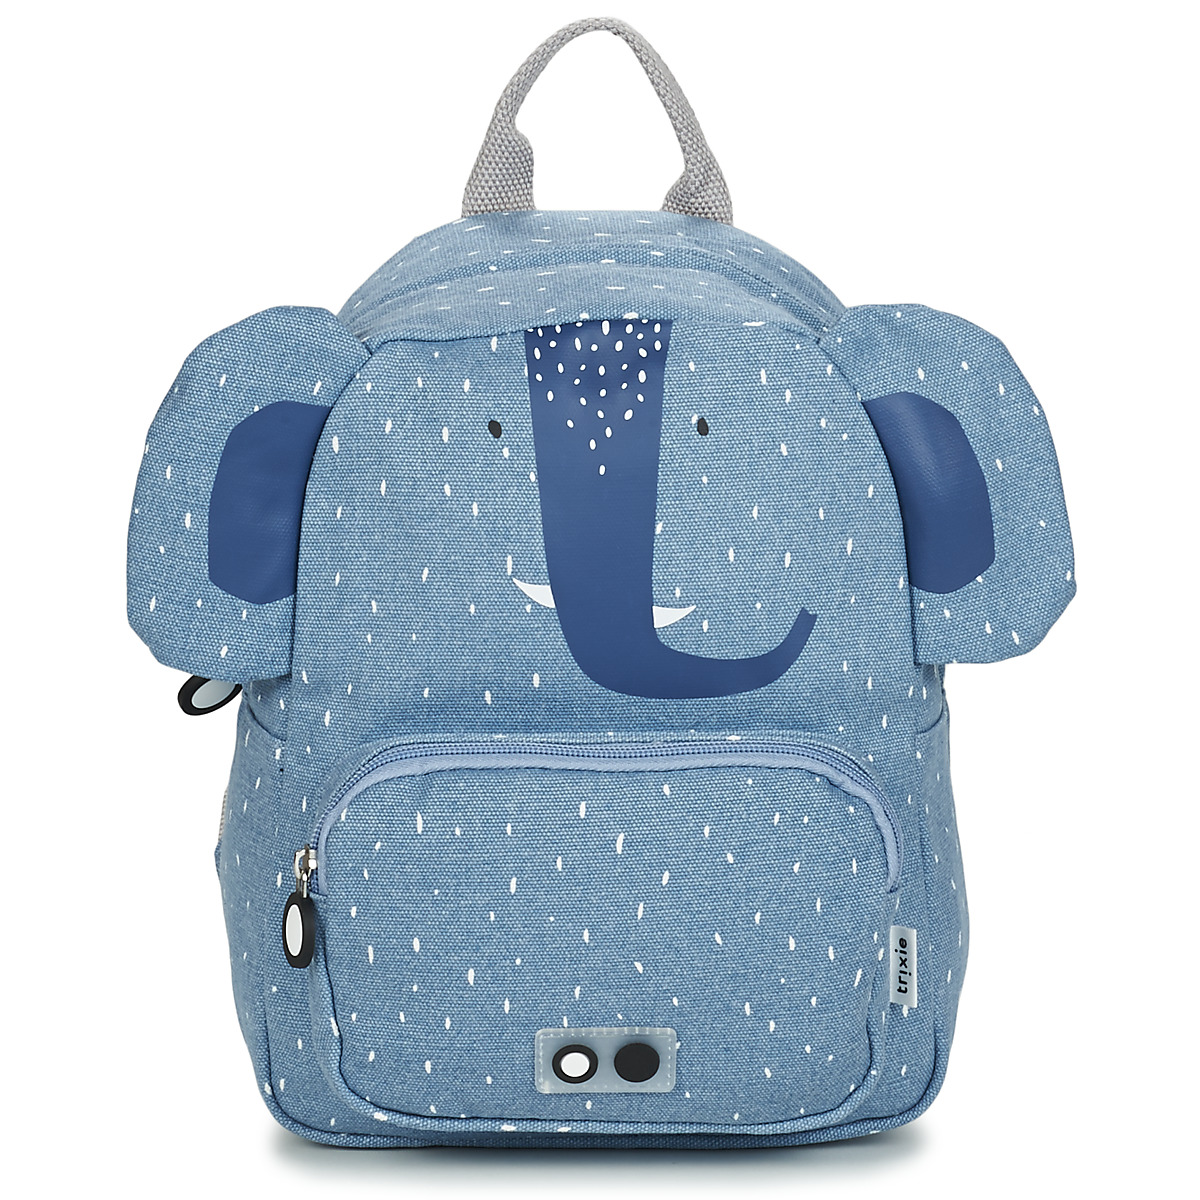 Bags Children Rucksacks TRIXIE MISTER ELEPHANT Blue